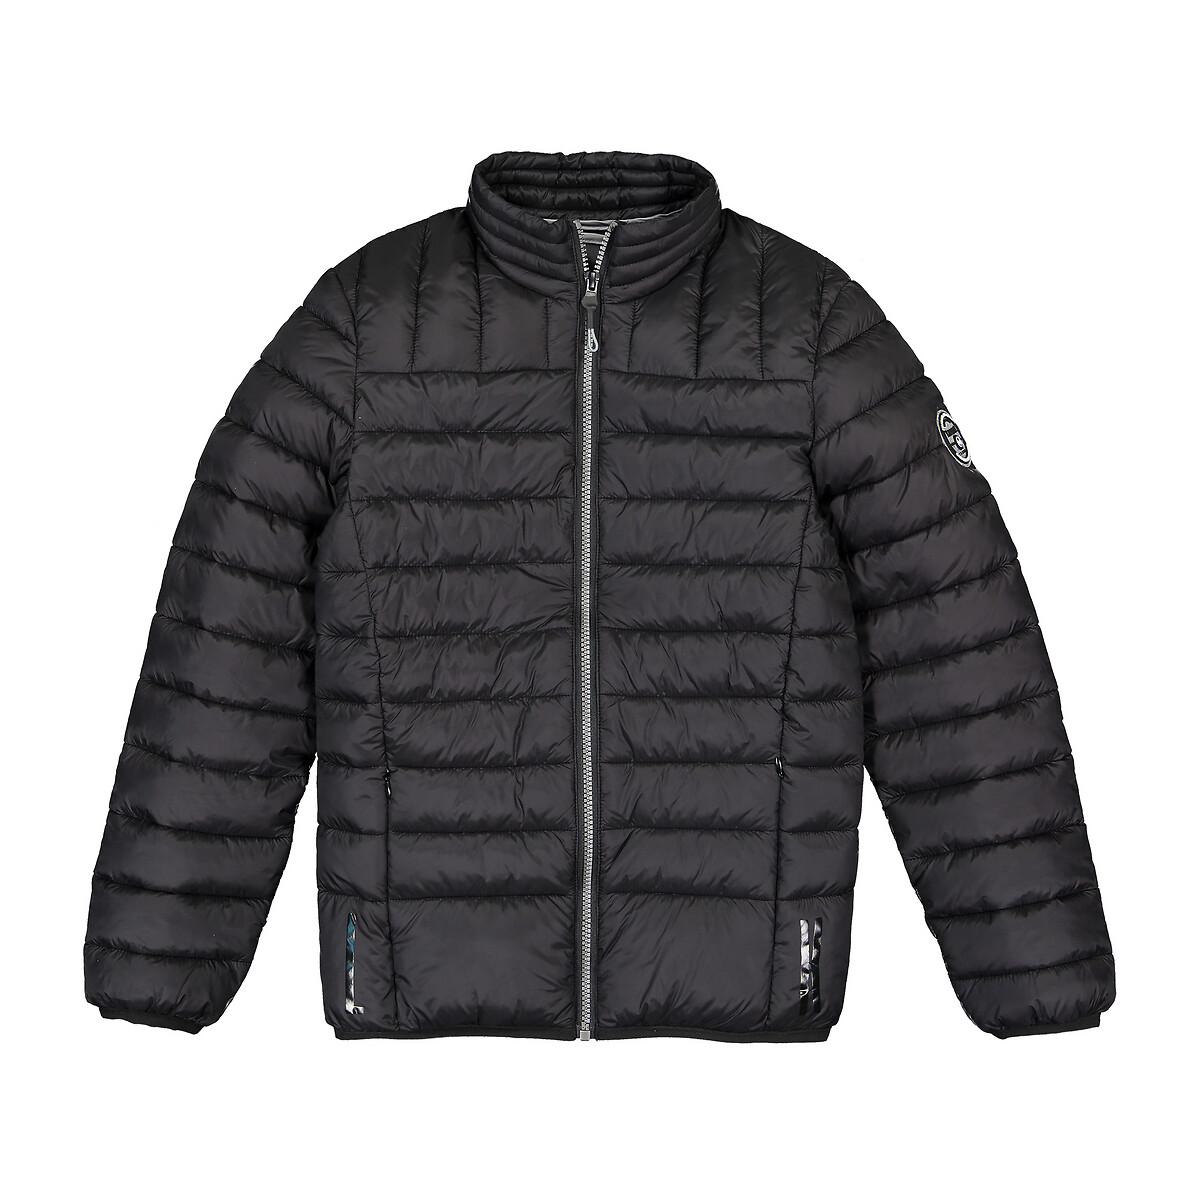 Куртка La Redoute Стеганая 10-16 лет 16 лет - 174 см черный, размер 16 лет - 174 см